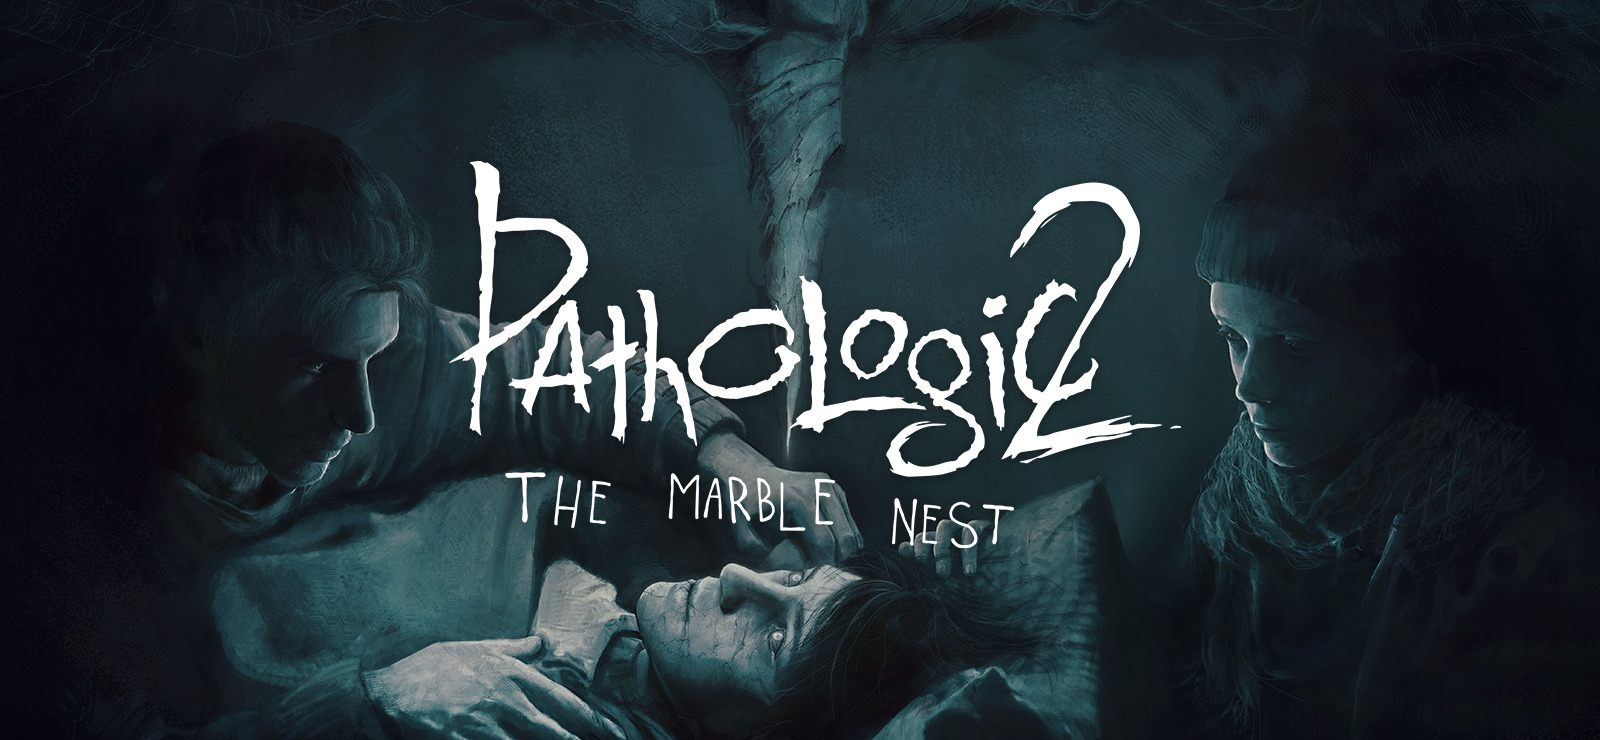 Pathologic 2 + Marble Nest DLC Bundle 